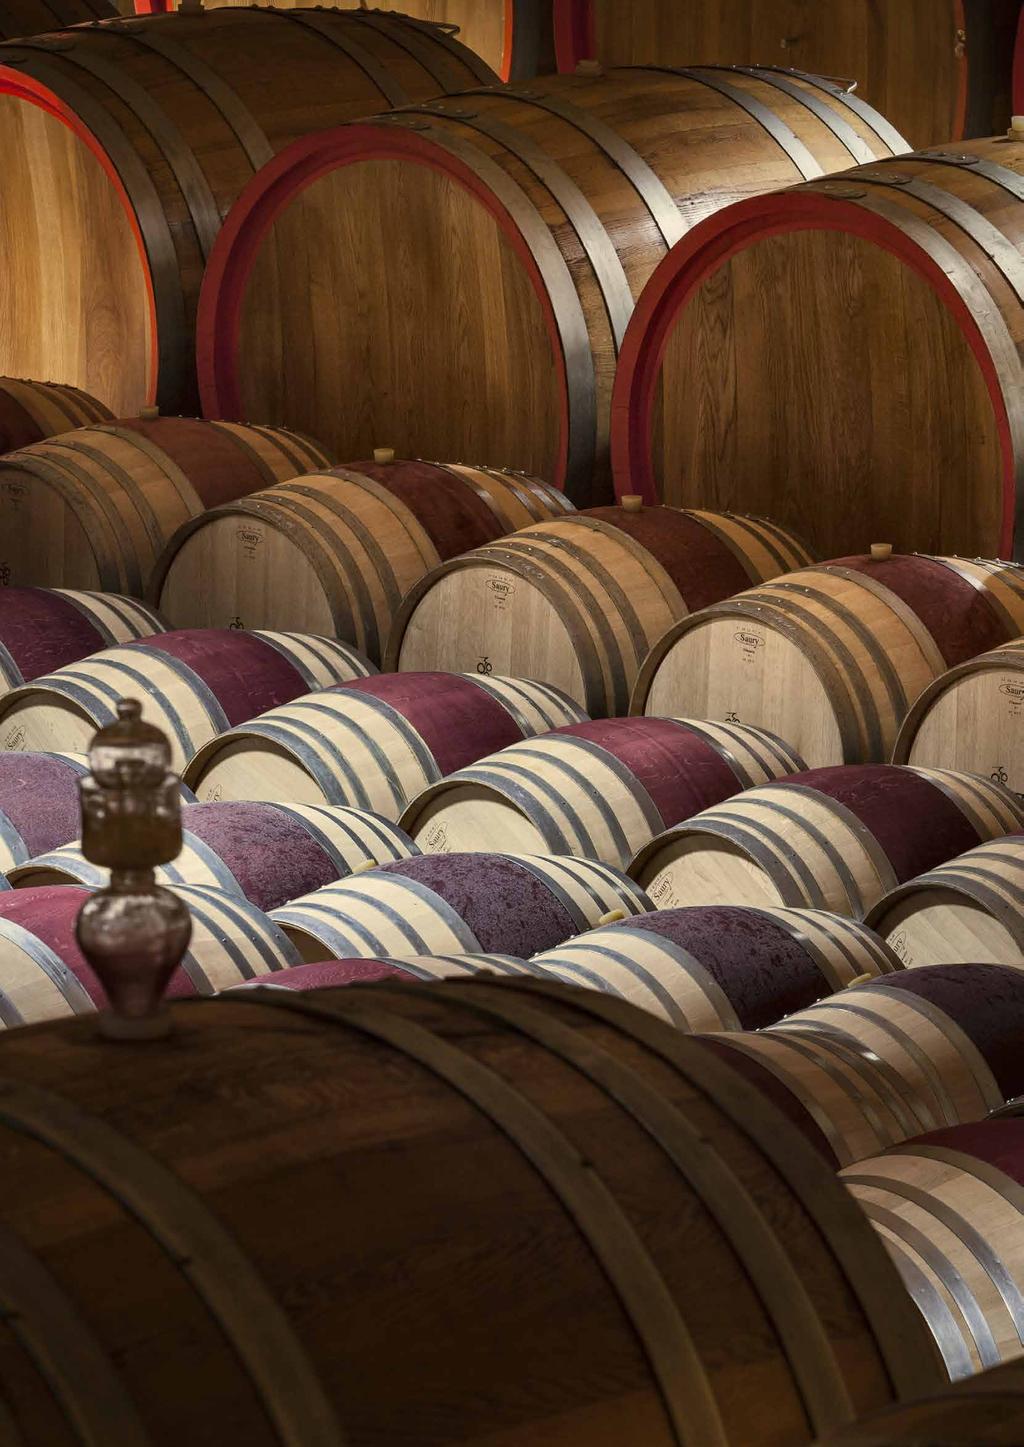 Dall esperienza di viticoltori maturata e tramandata di generazione in generazione e dalla professionalità che contraddistingue il nostro lavoro, nasce la gamma di vini Monteci.